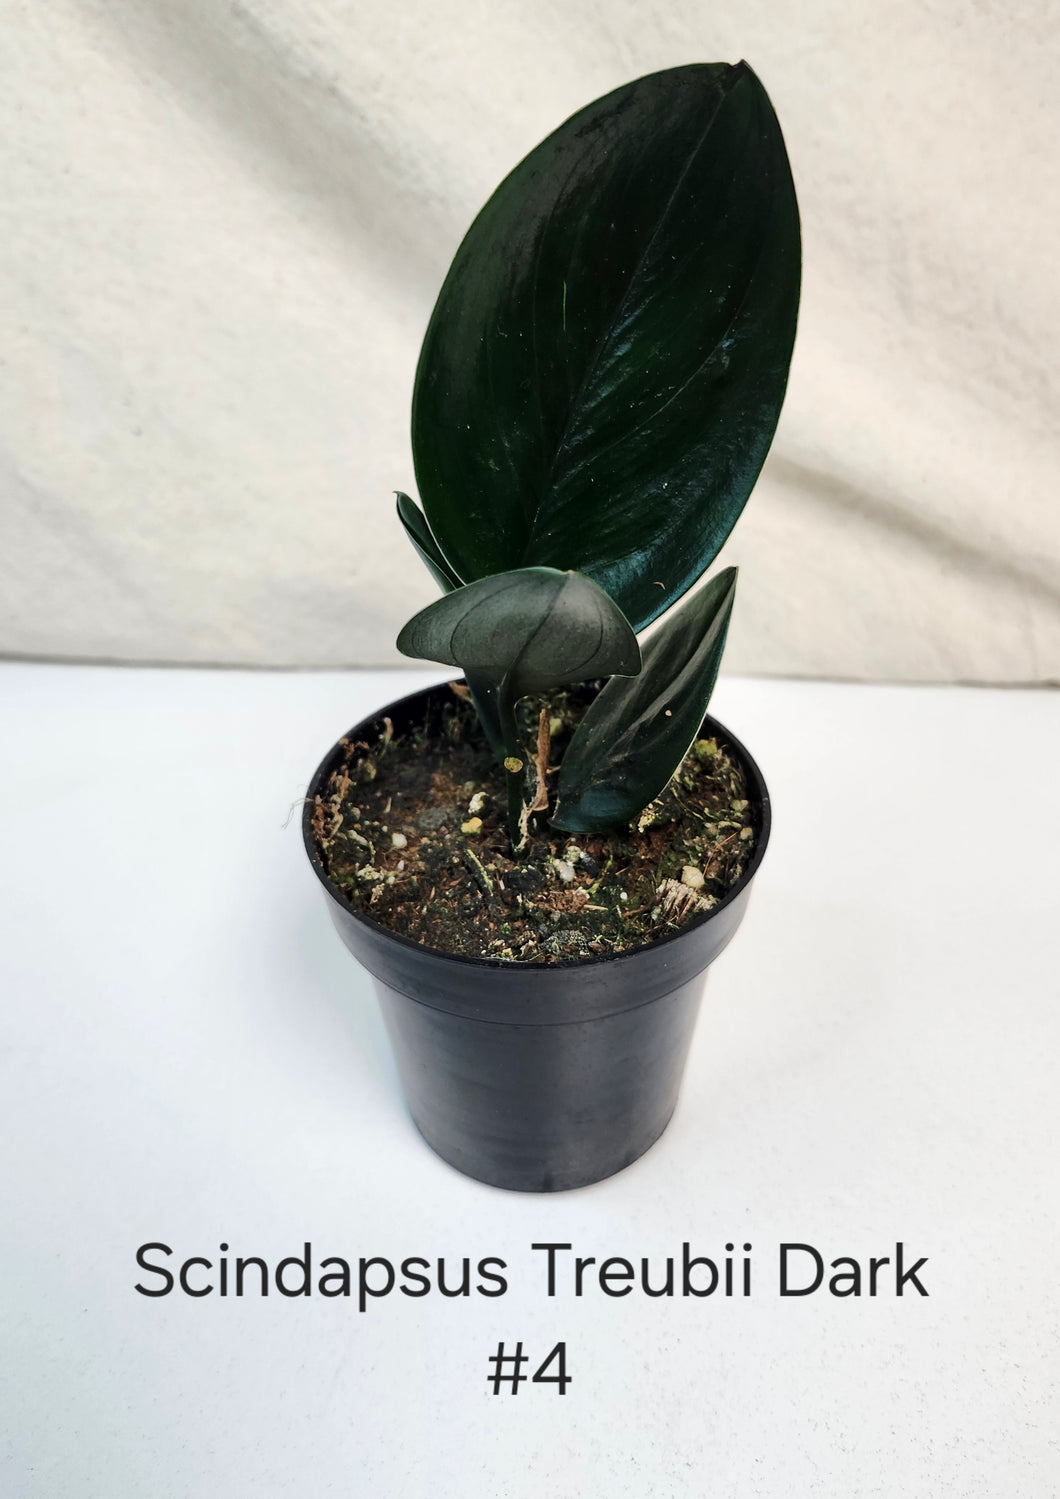 Scindapsus Treubii Dark Form #4